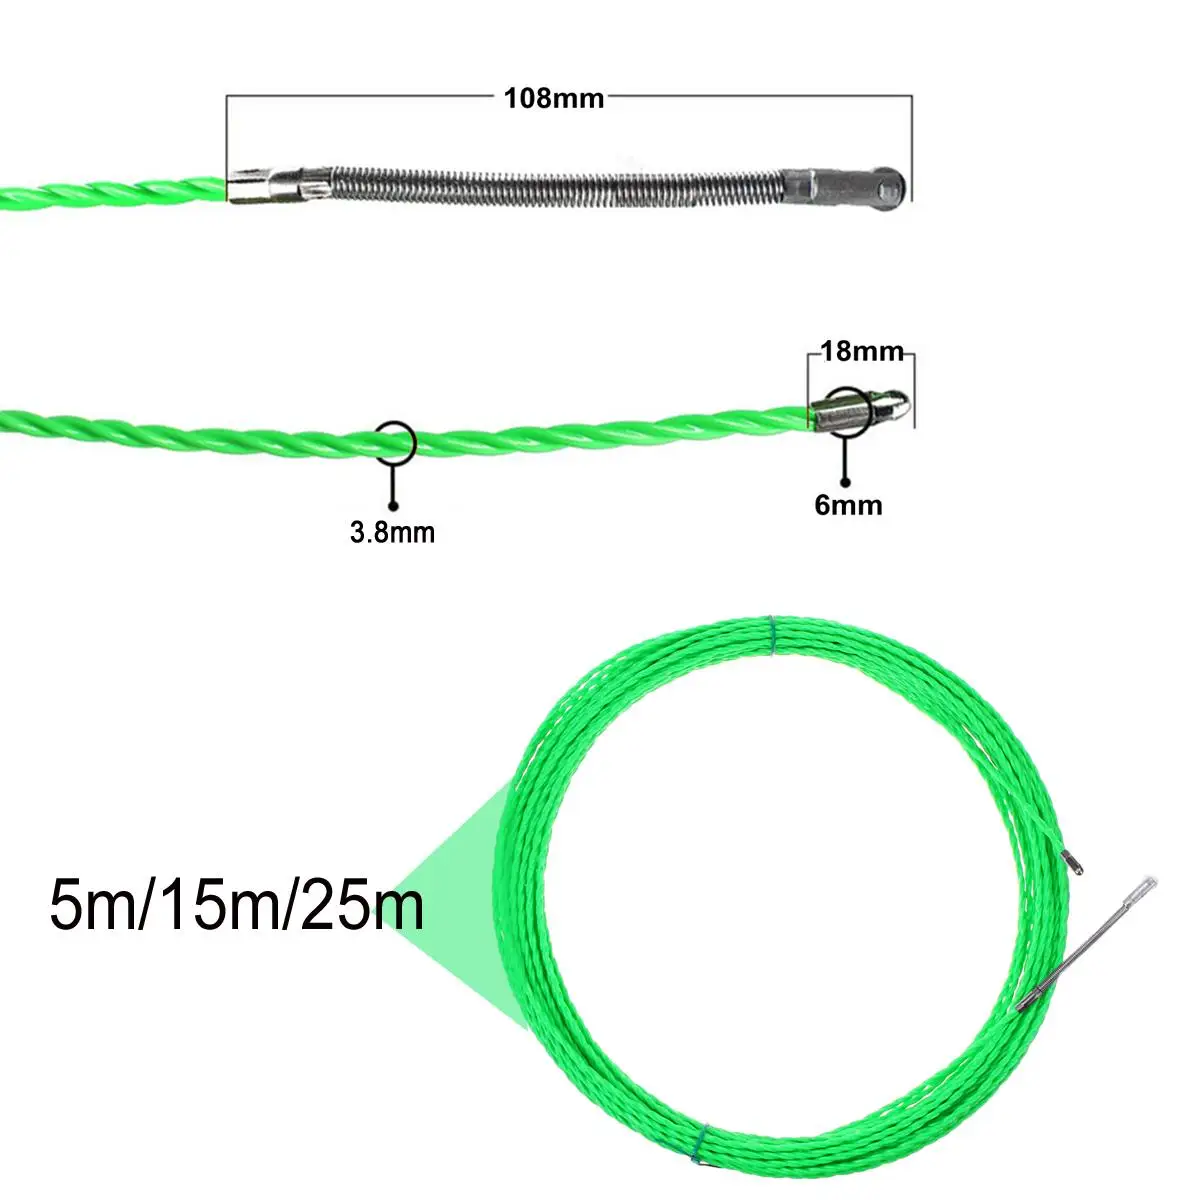 4 мм 5 м/15 м/25 м кабель из стекловолокна пуш-ап съемники канал змея роддер для протяжки проводов провода POM рыбы рисовать лента Электрический кабель Съемник